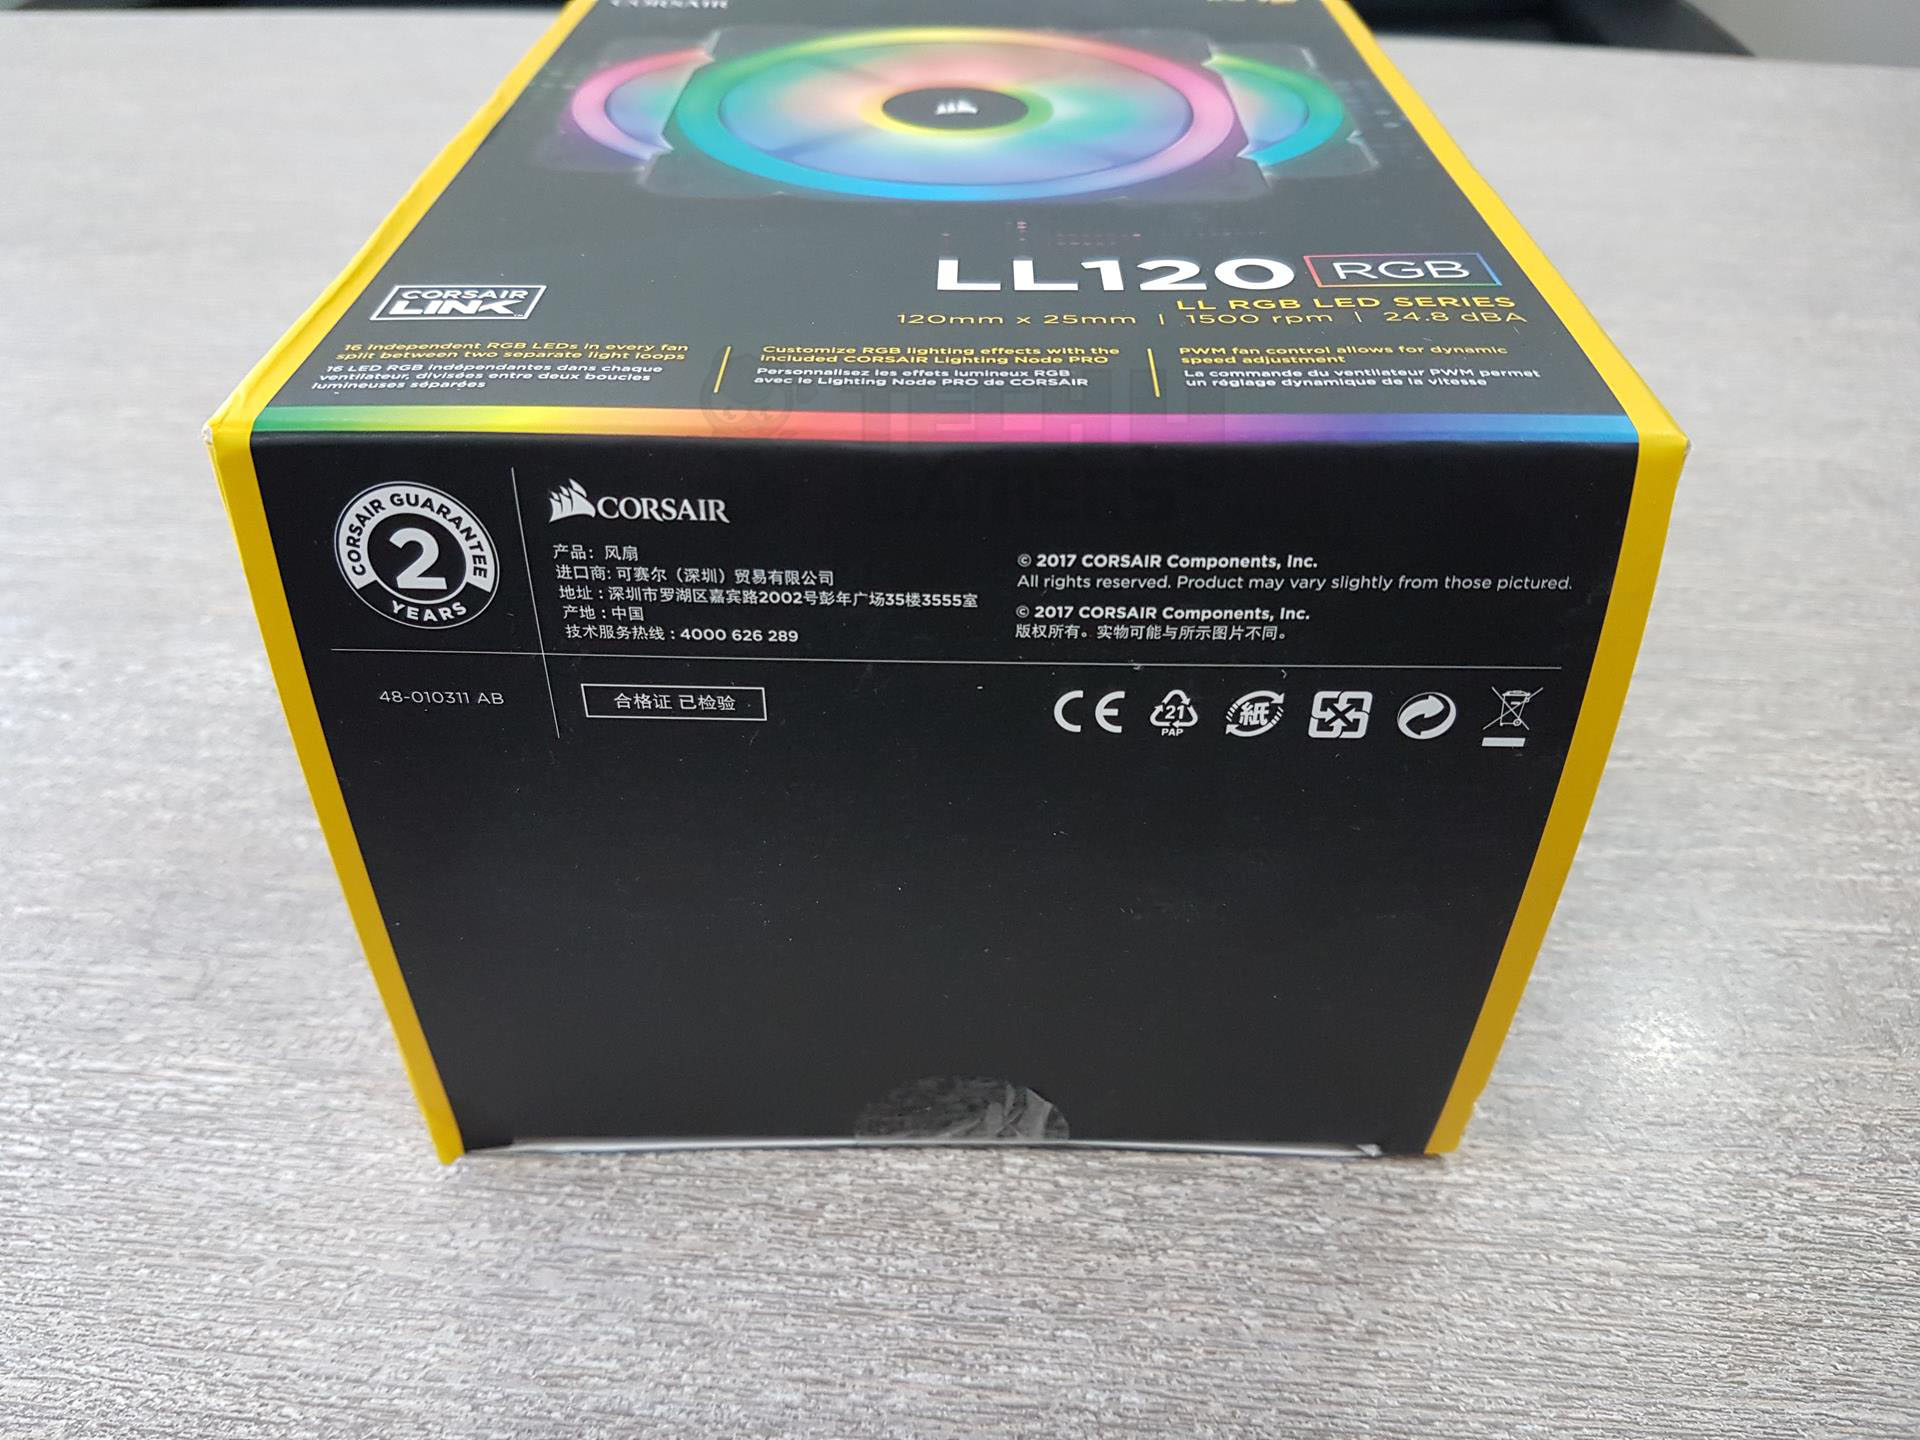 LL120 RGB LED Unboxing